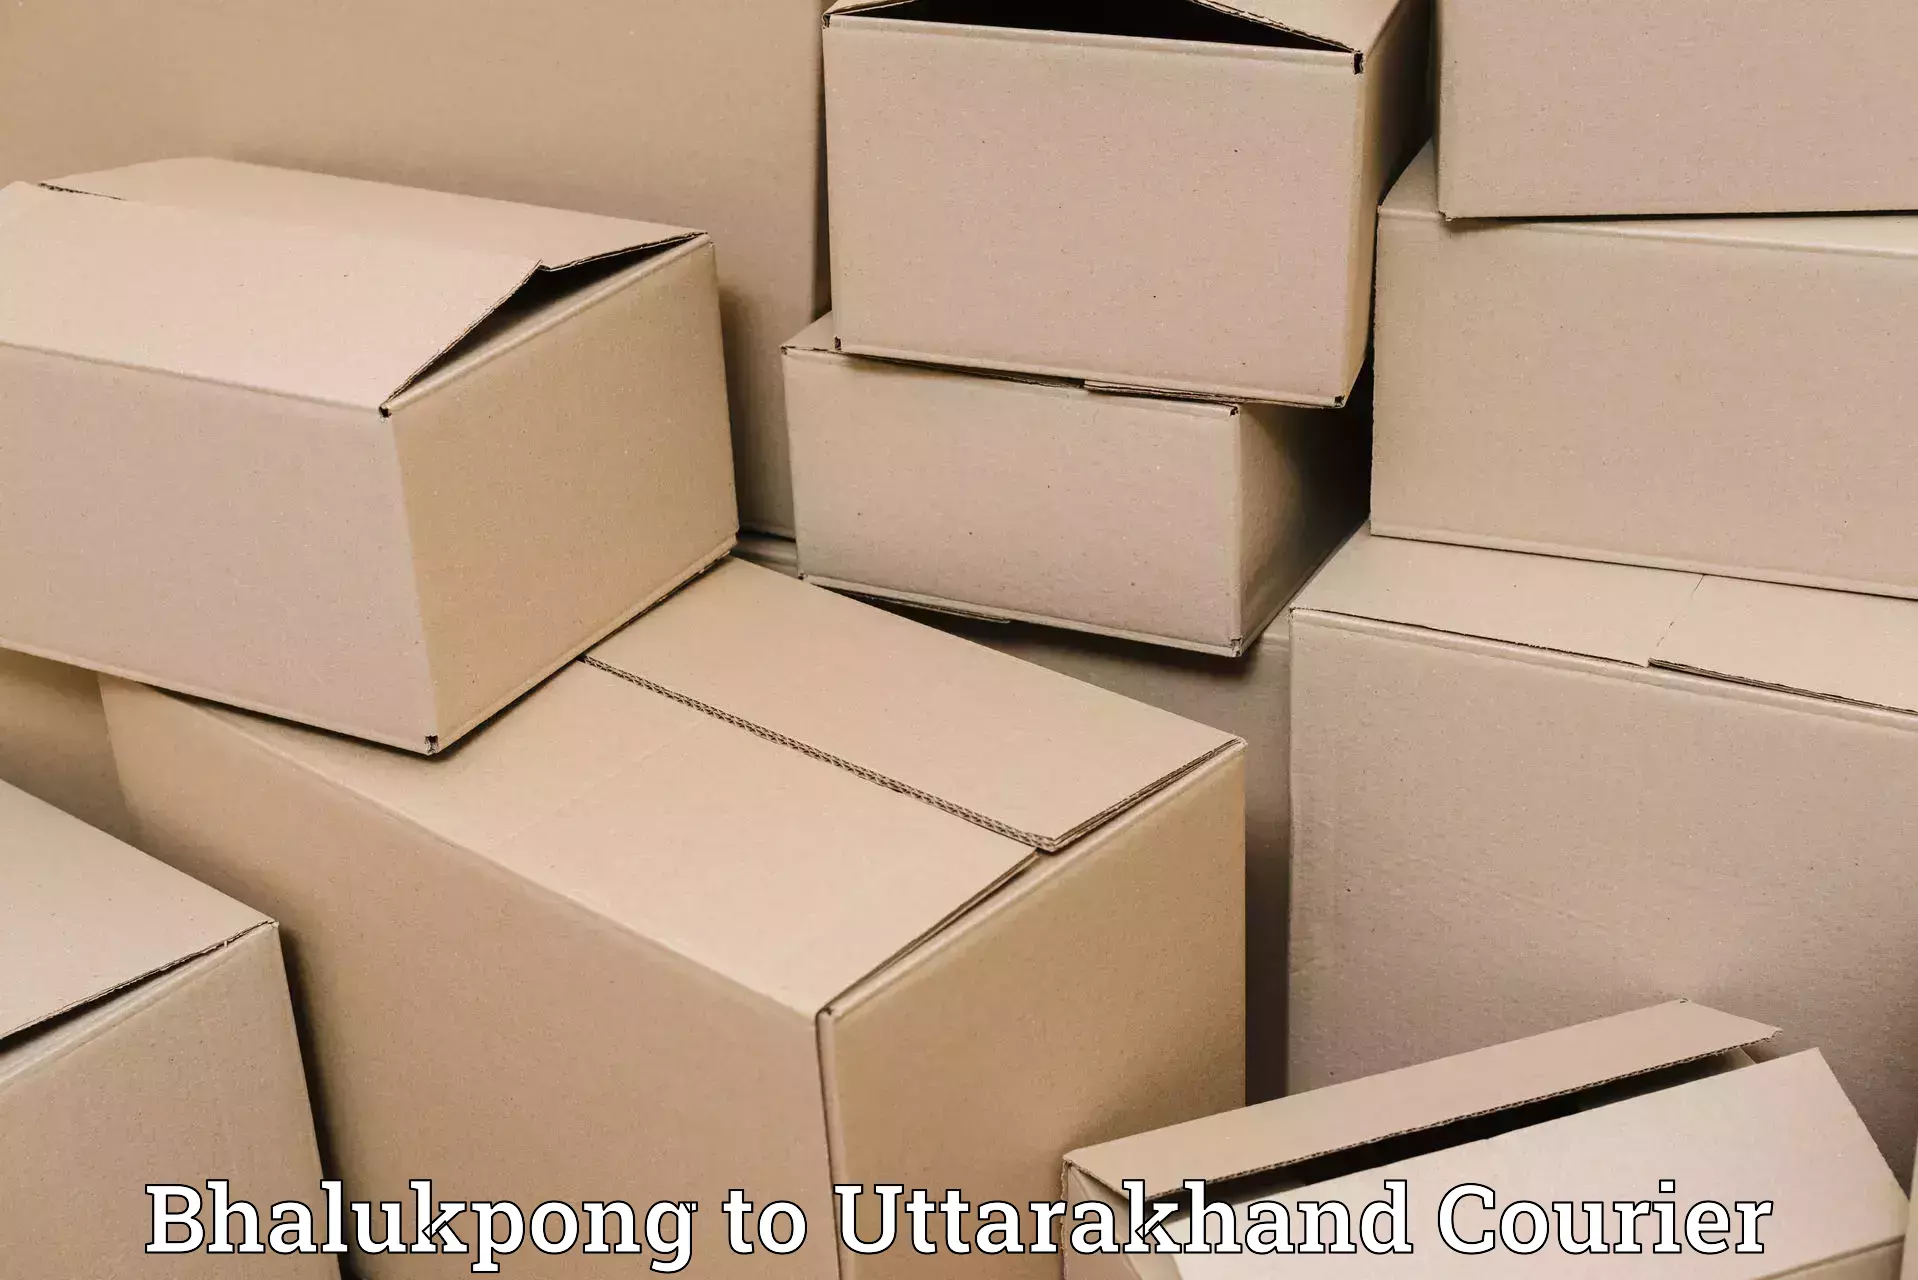 Luggage shipping planner Bhalukpong to Uttarakhand